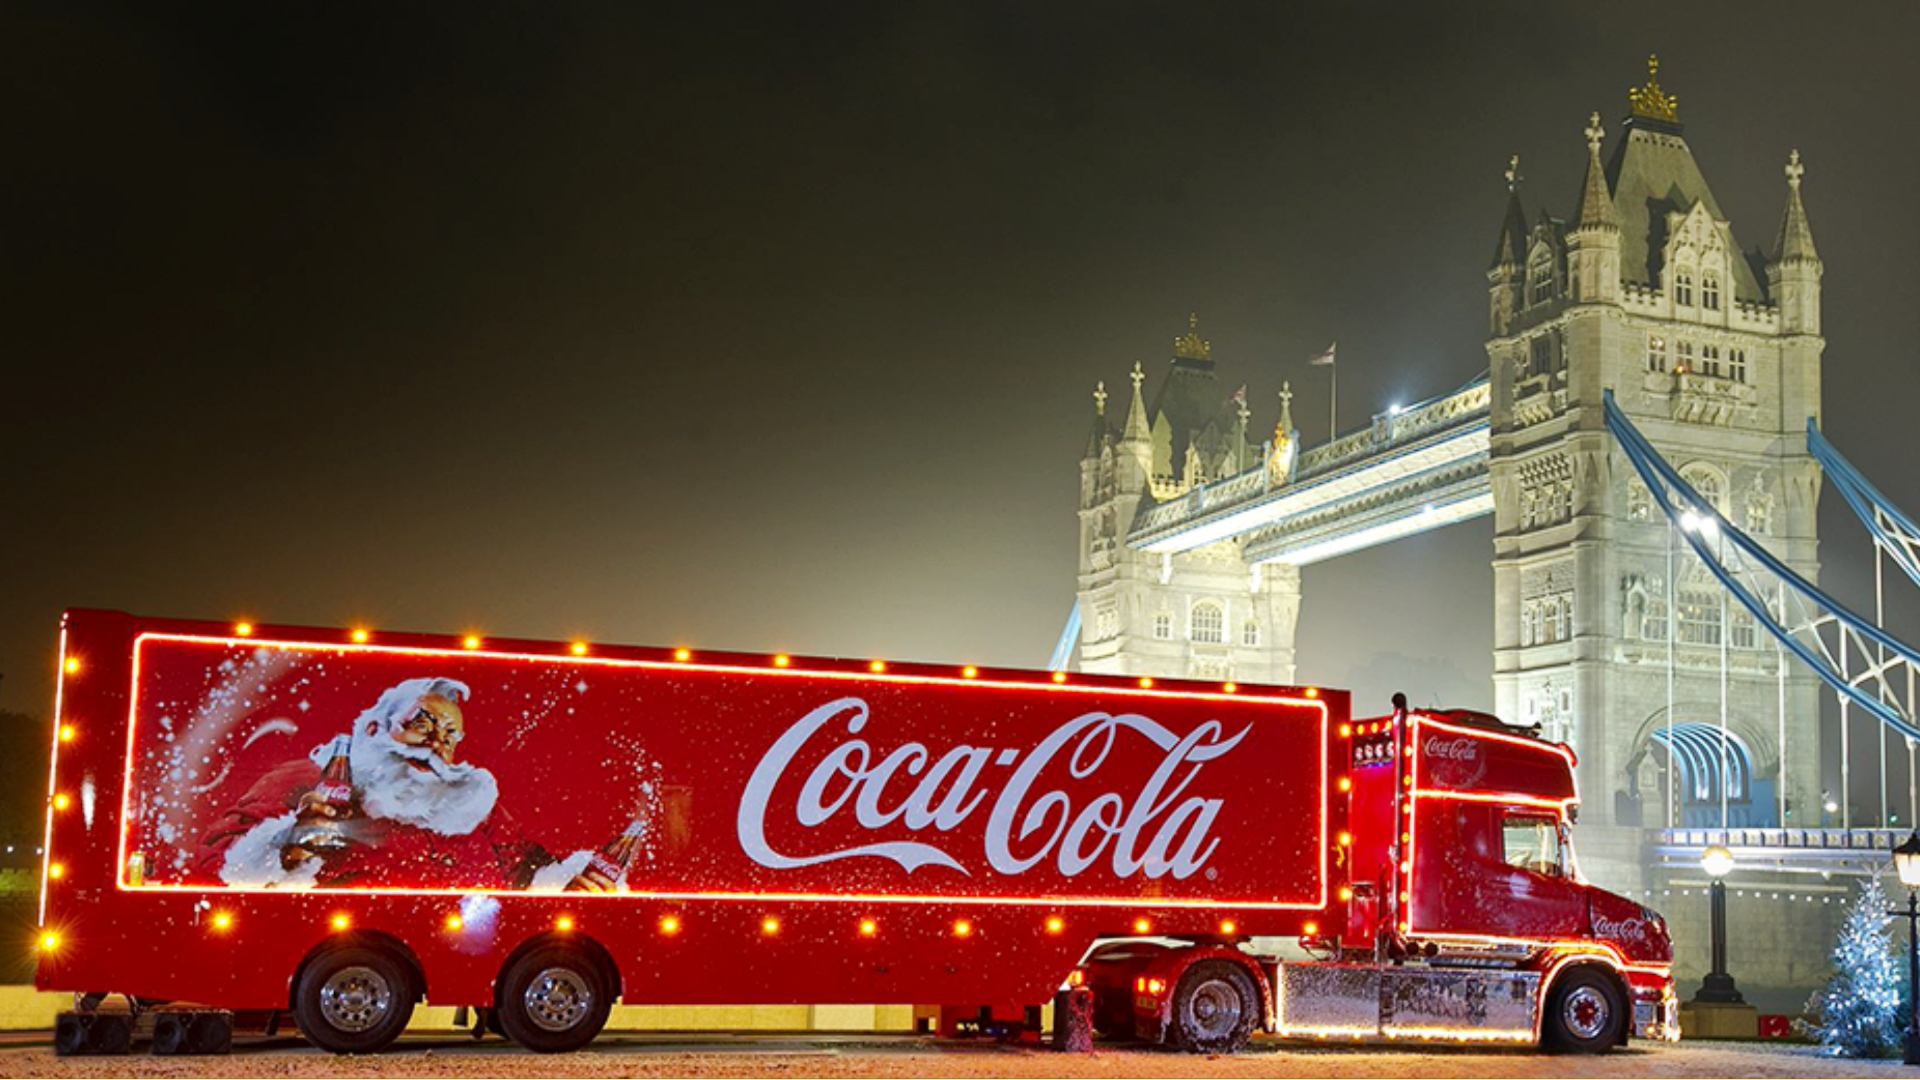 Coca-Cola Truck in London